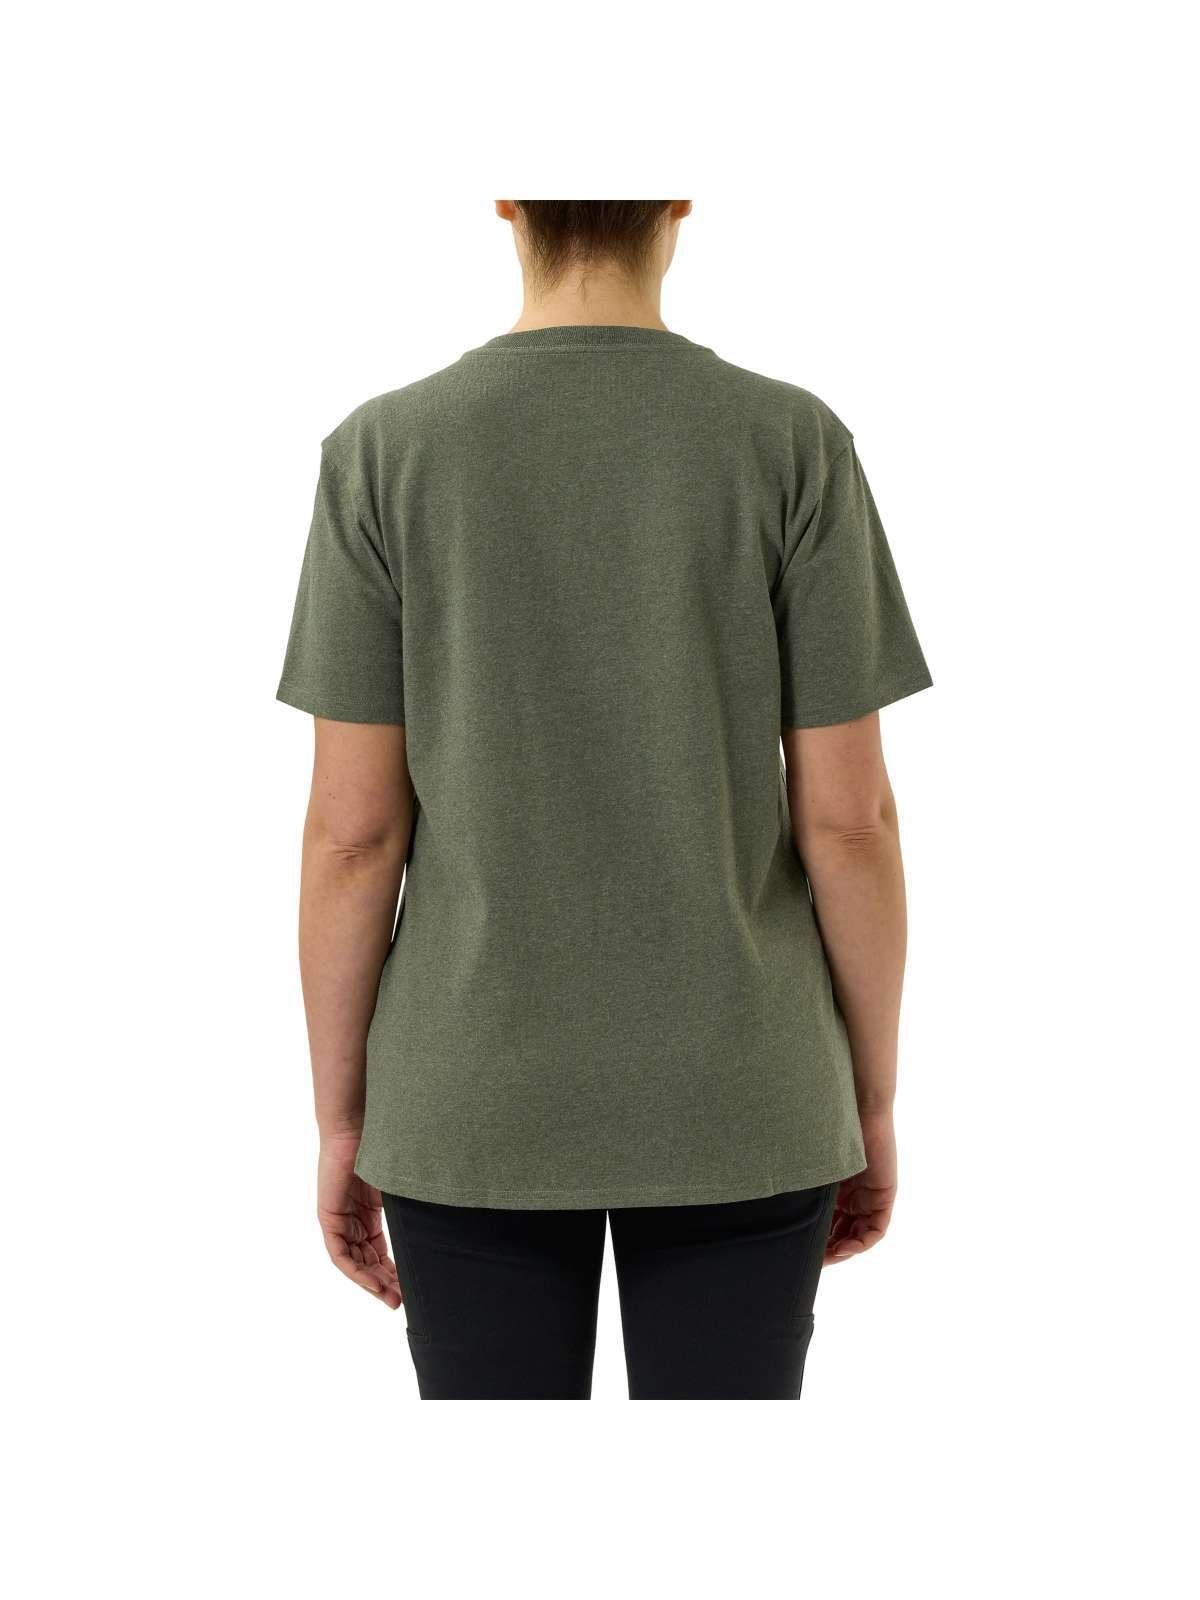 basil Carhartt T-Shirt heather T-shirt Graphic Carhartt